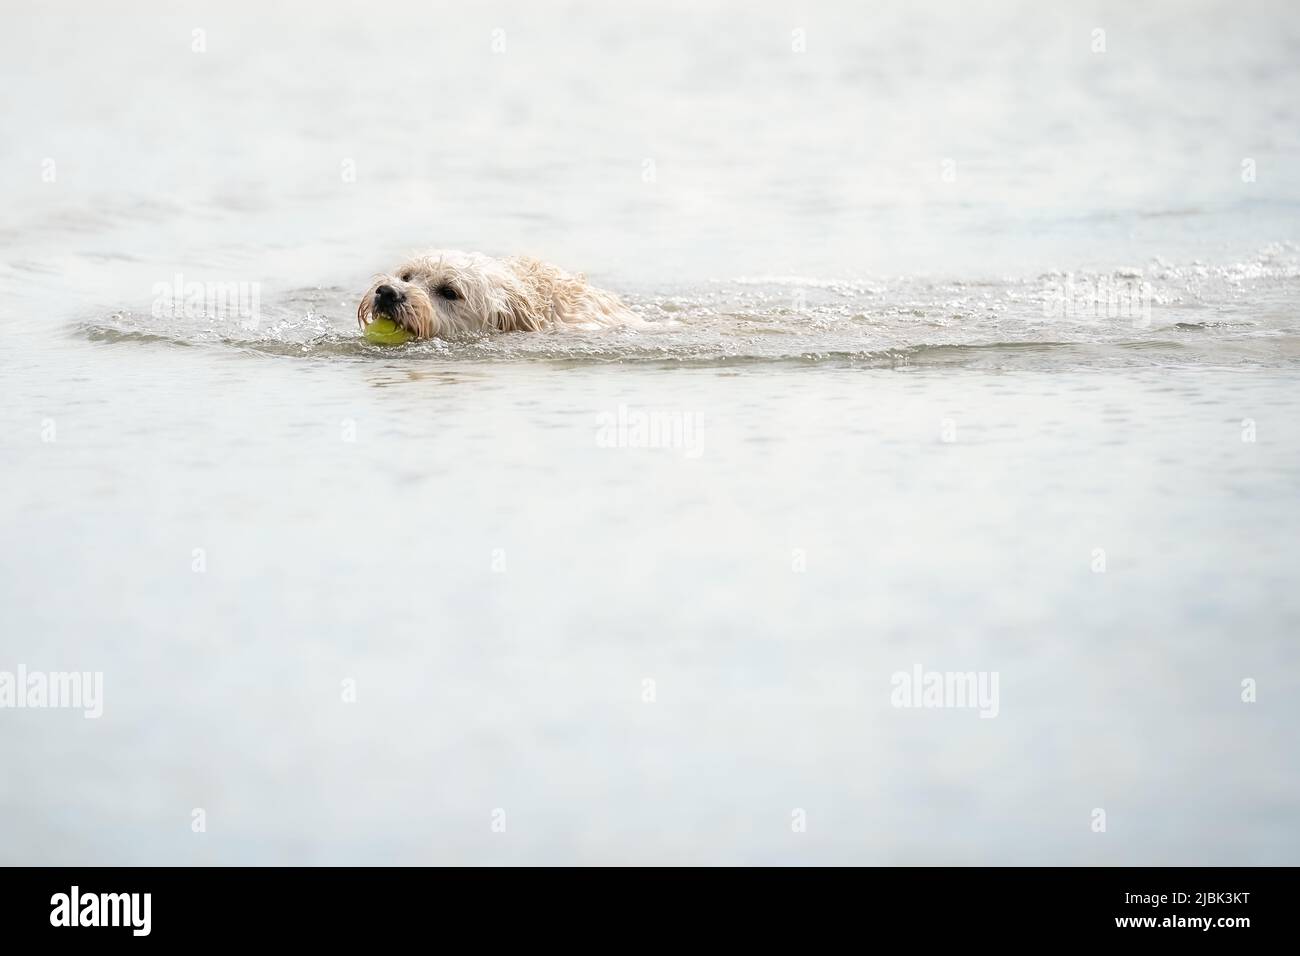 Le chien blanc de Labradoodle joue dans un lac. Le chien blanc nage dans l'eau. Boule jaune dans sa bouche, tête de chien juste au-dessus de l'eau Banque D'Images